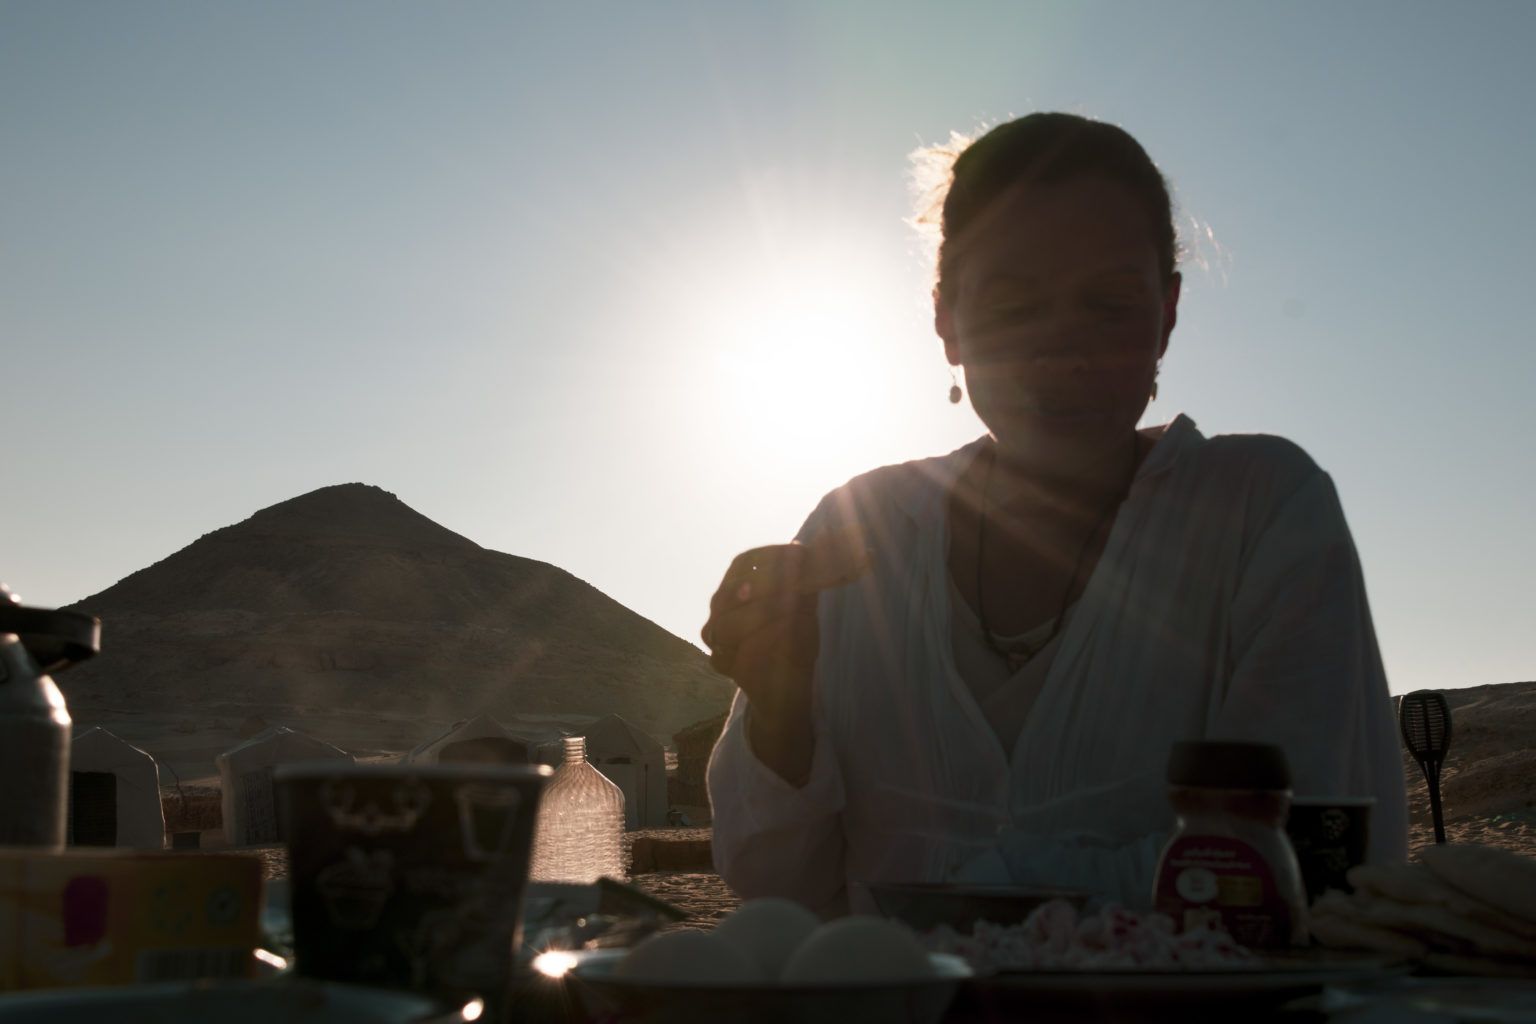 petit déjeuner dans le désert du Sahara lors de notre excursion à la journée depuis l'oasis de Siwa en Egypte